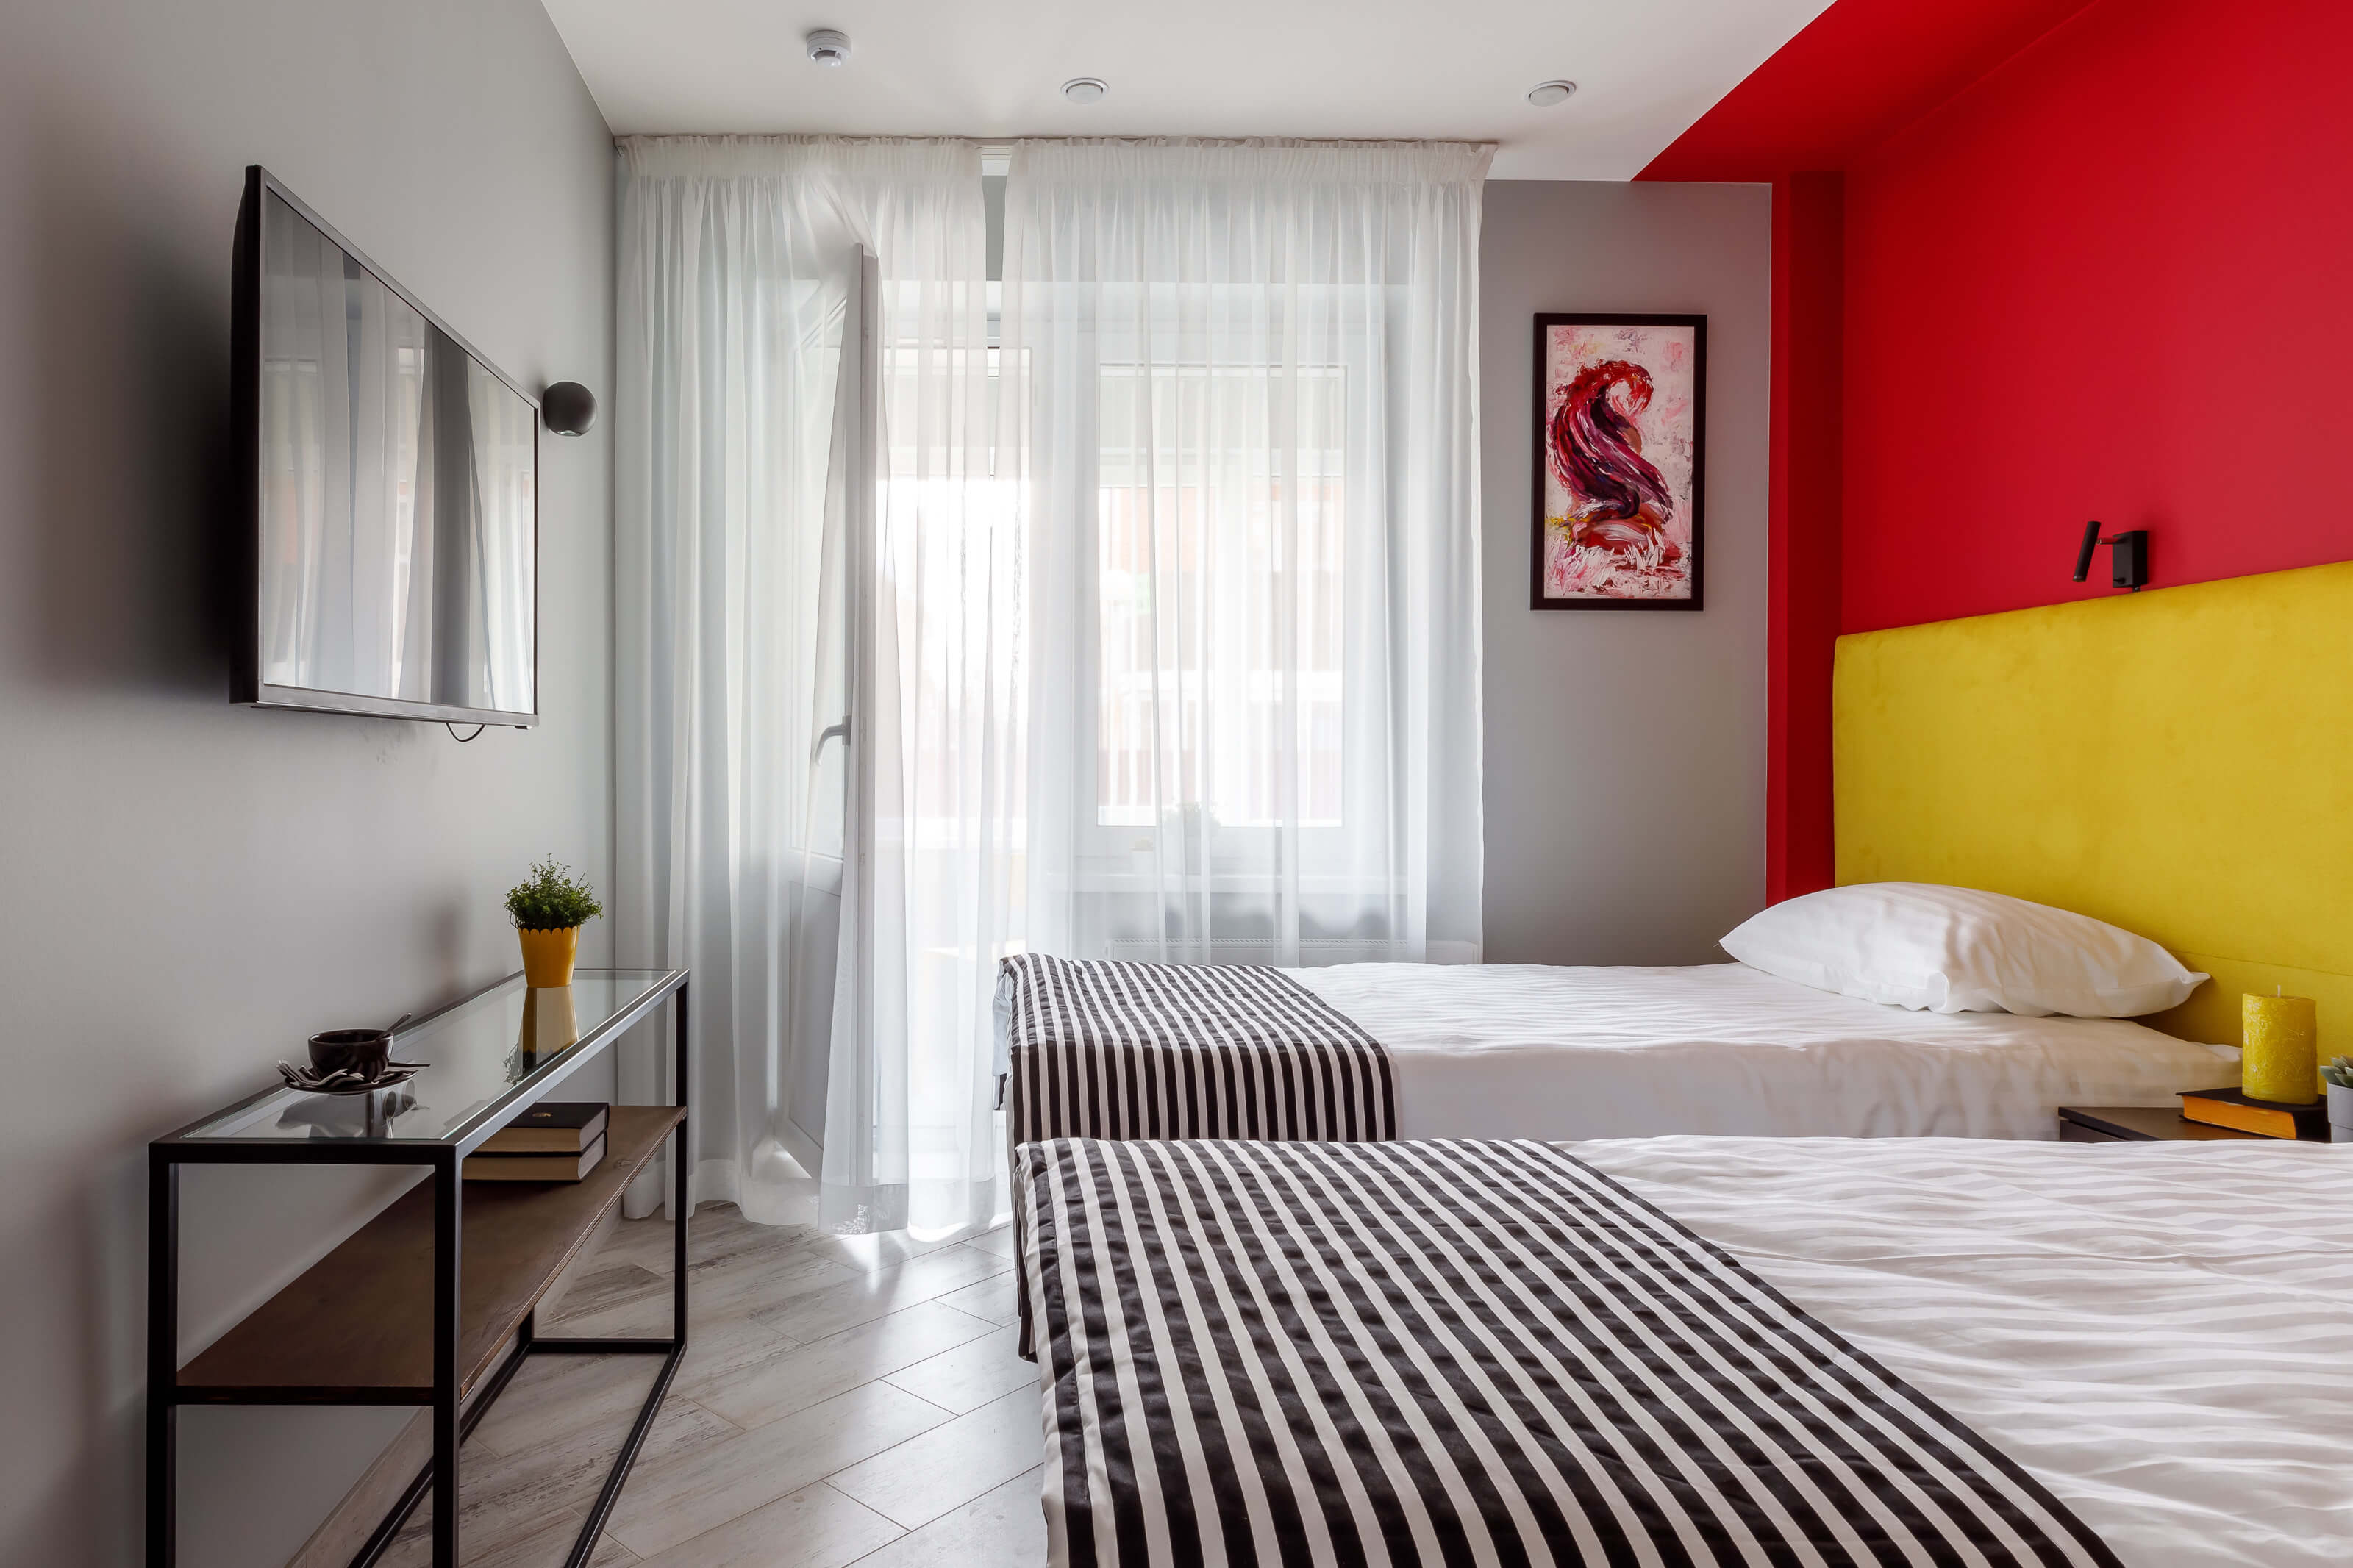 Стена выкрашена в яркие красный и желтый цвет. На кровати полосатые черно-белые саше.